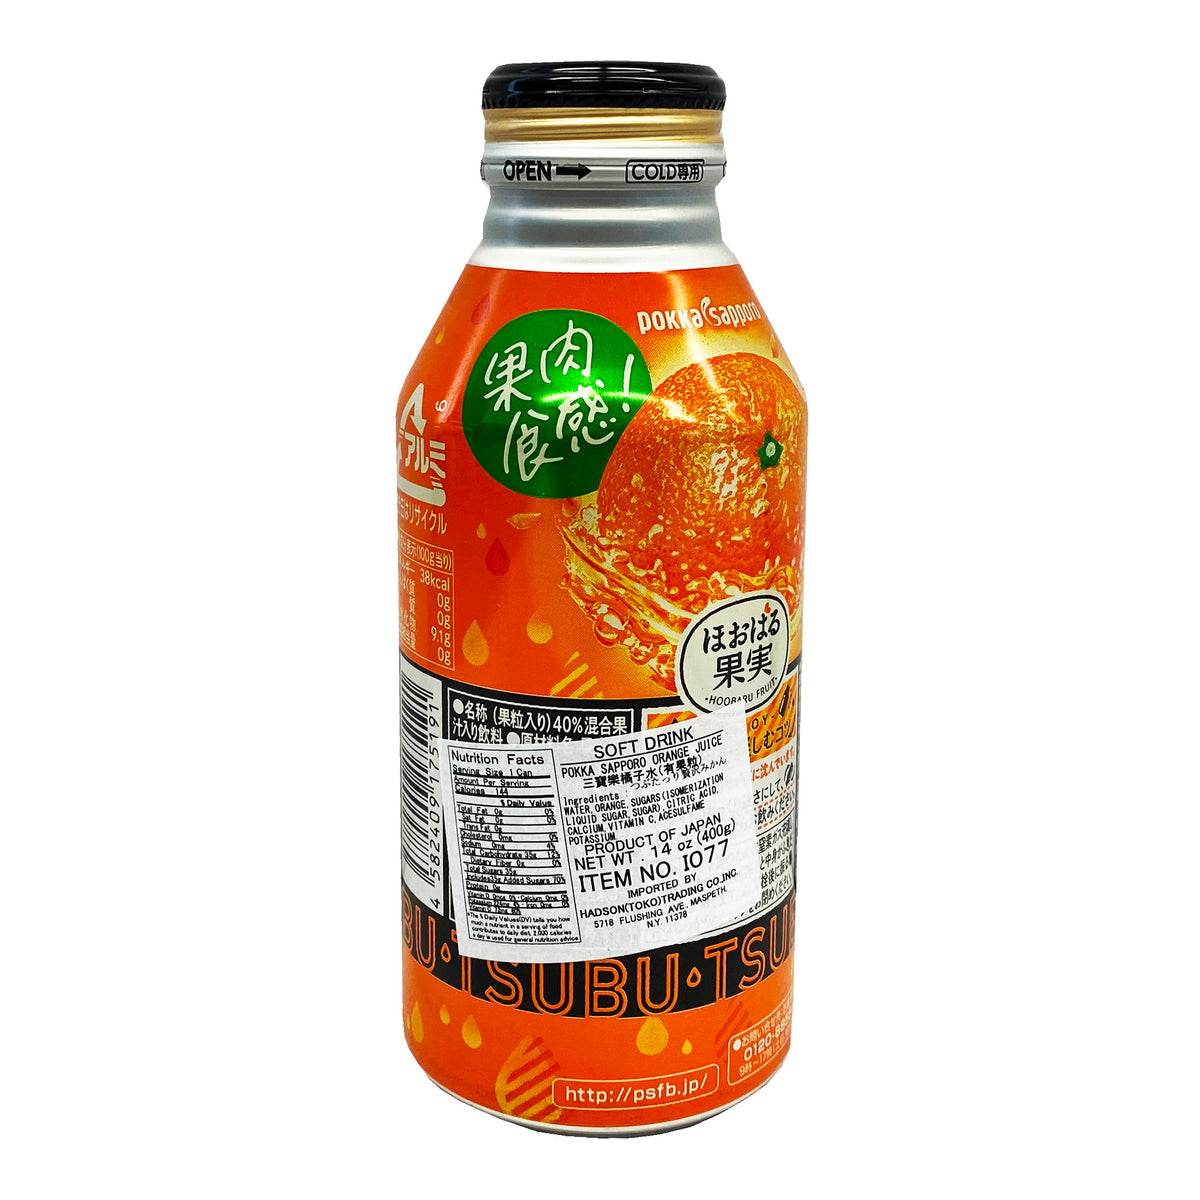 Pokka Sapporo Orange Juice 14oz (400g)